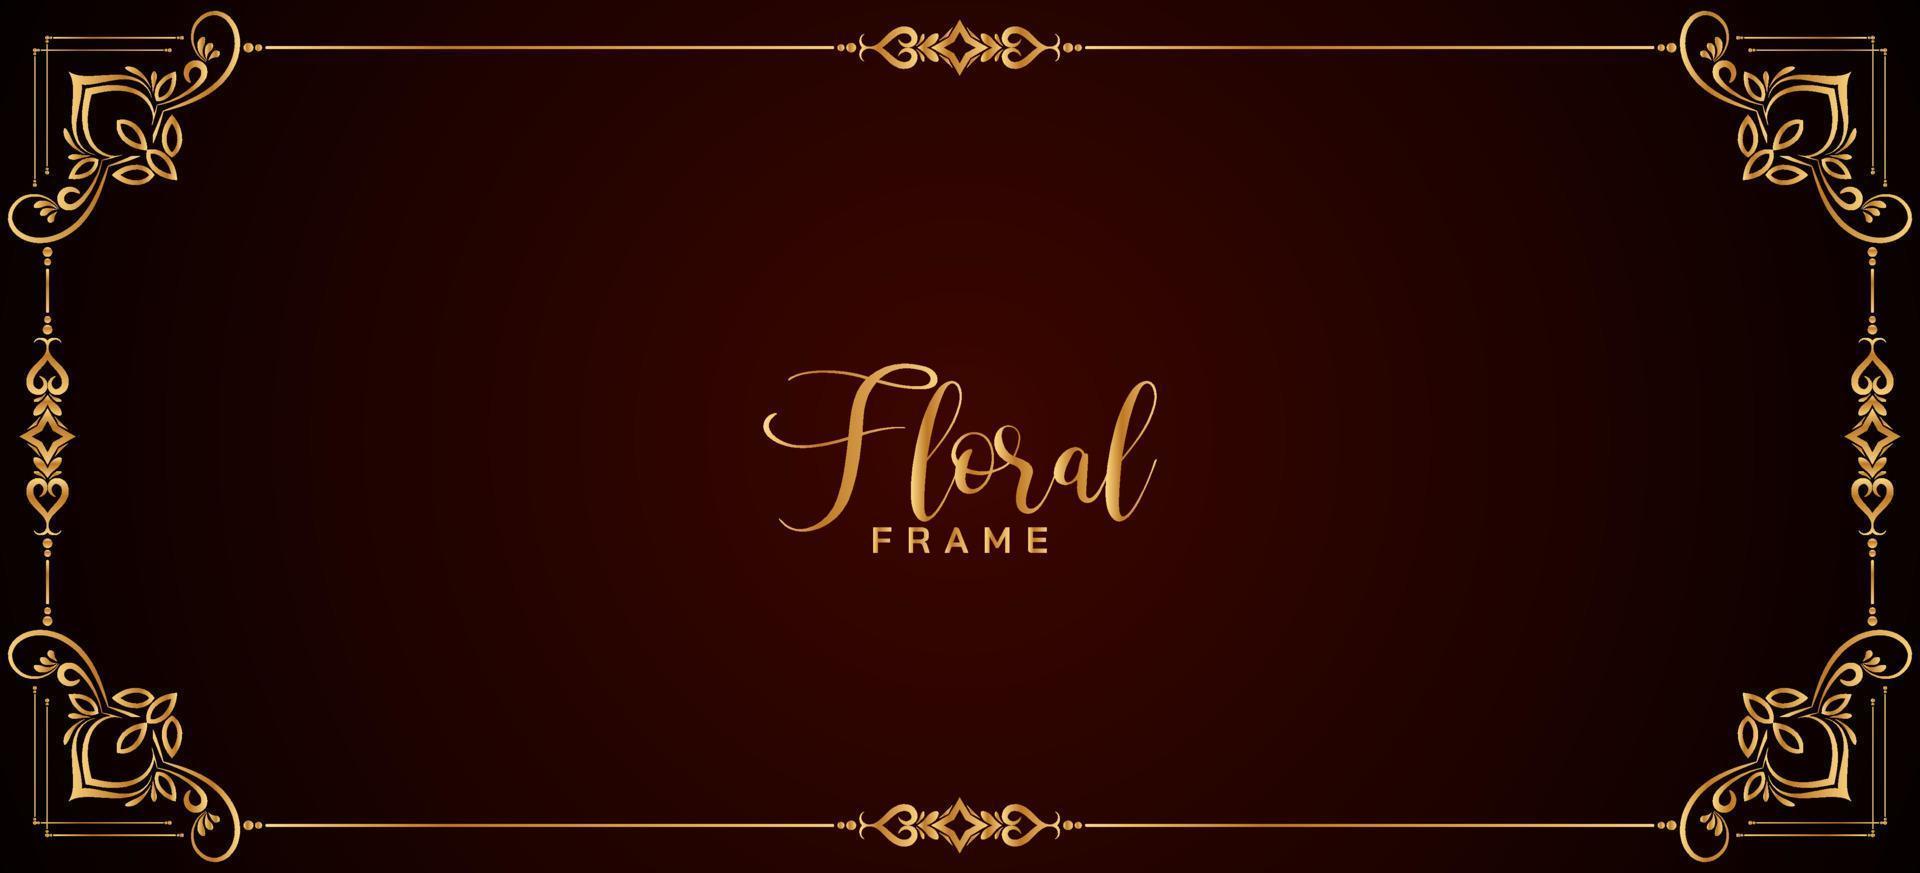 Decorative golden floral frame border red banner design vector